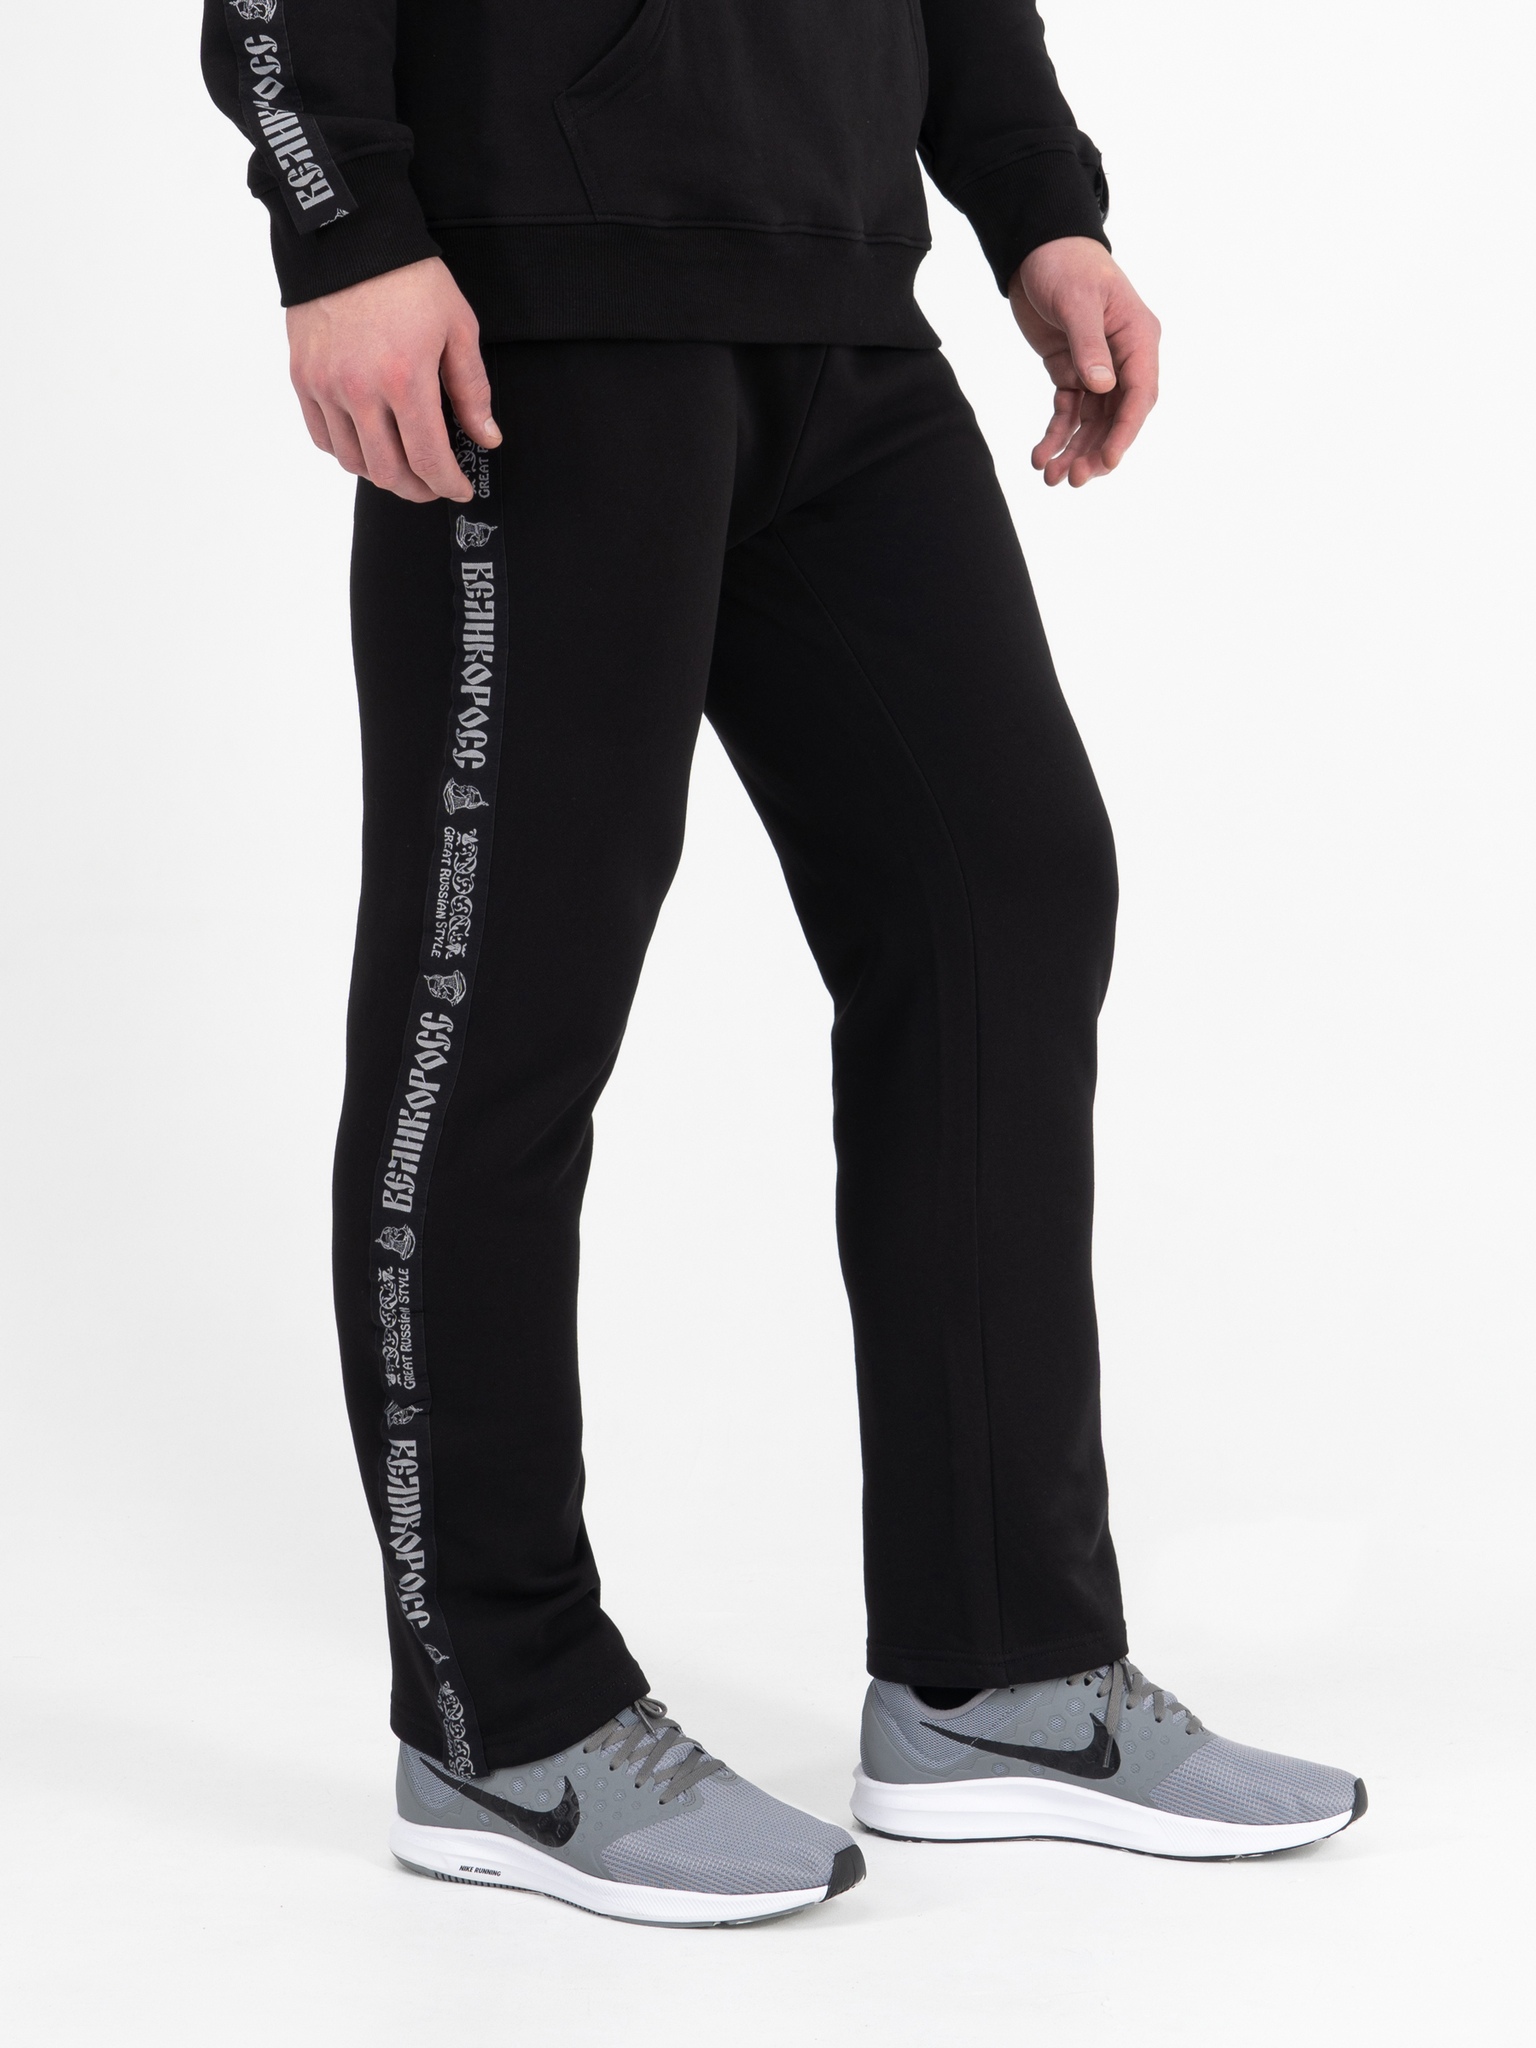 фото Спортивные брюки мужские великоросс bm черные 48 ru